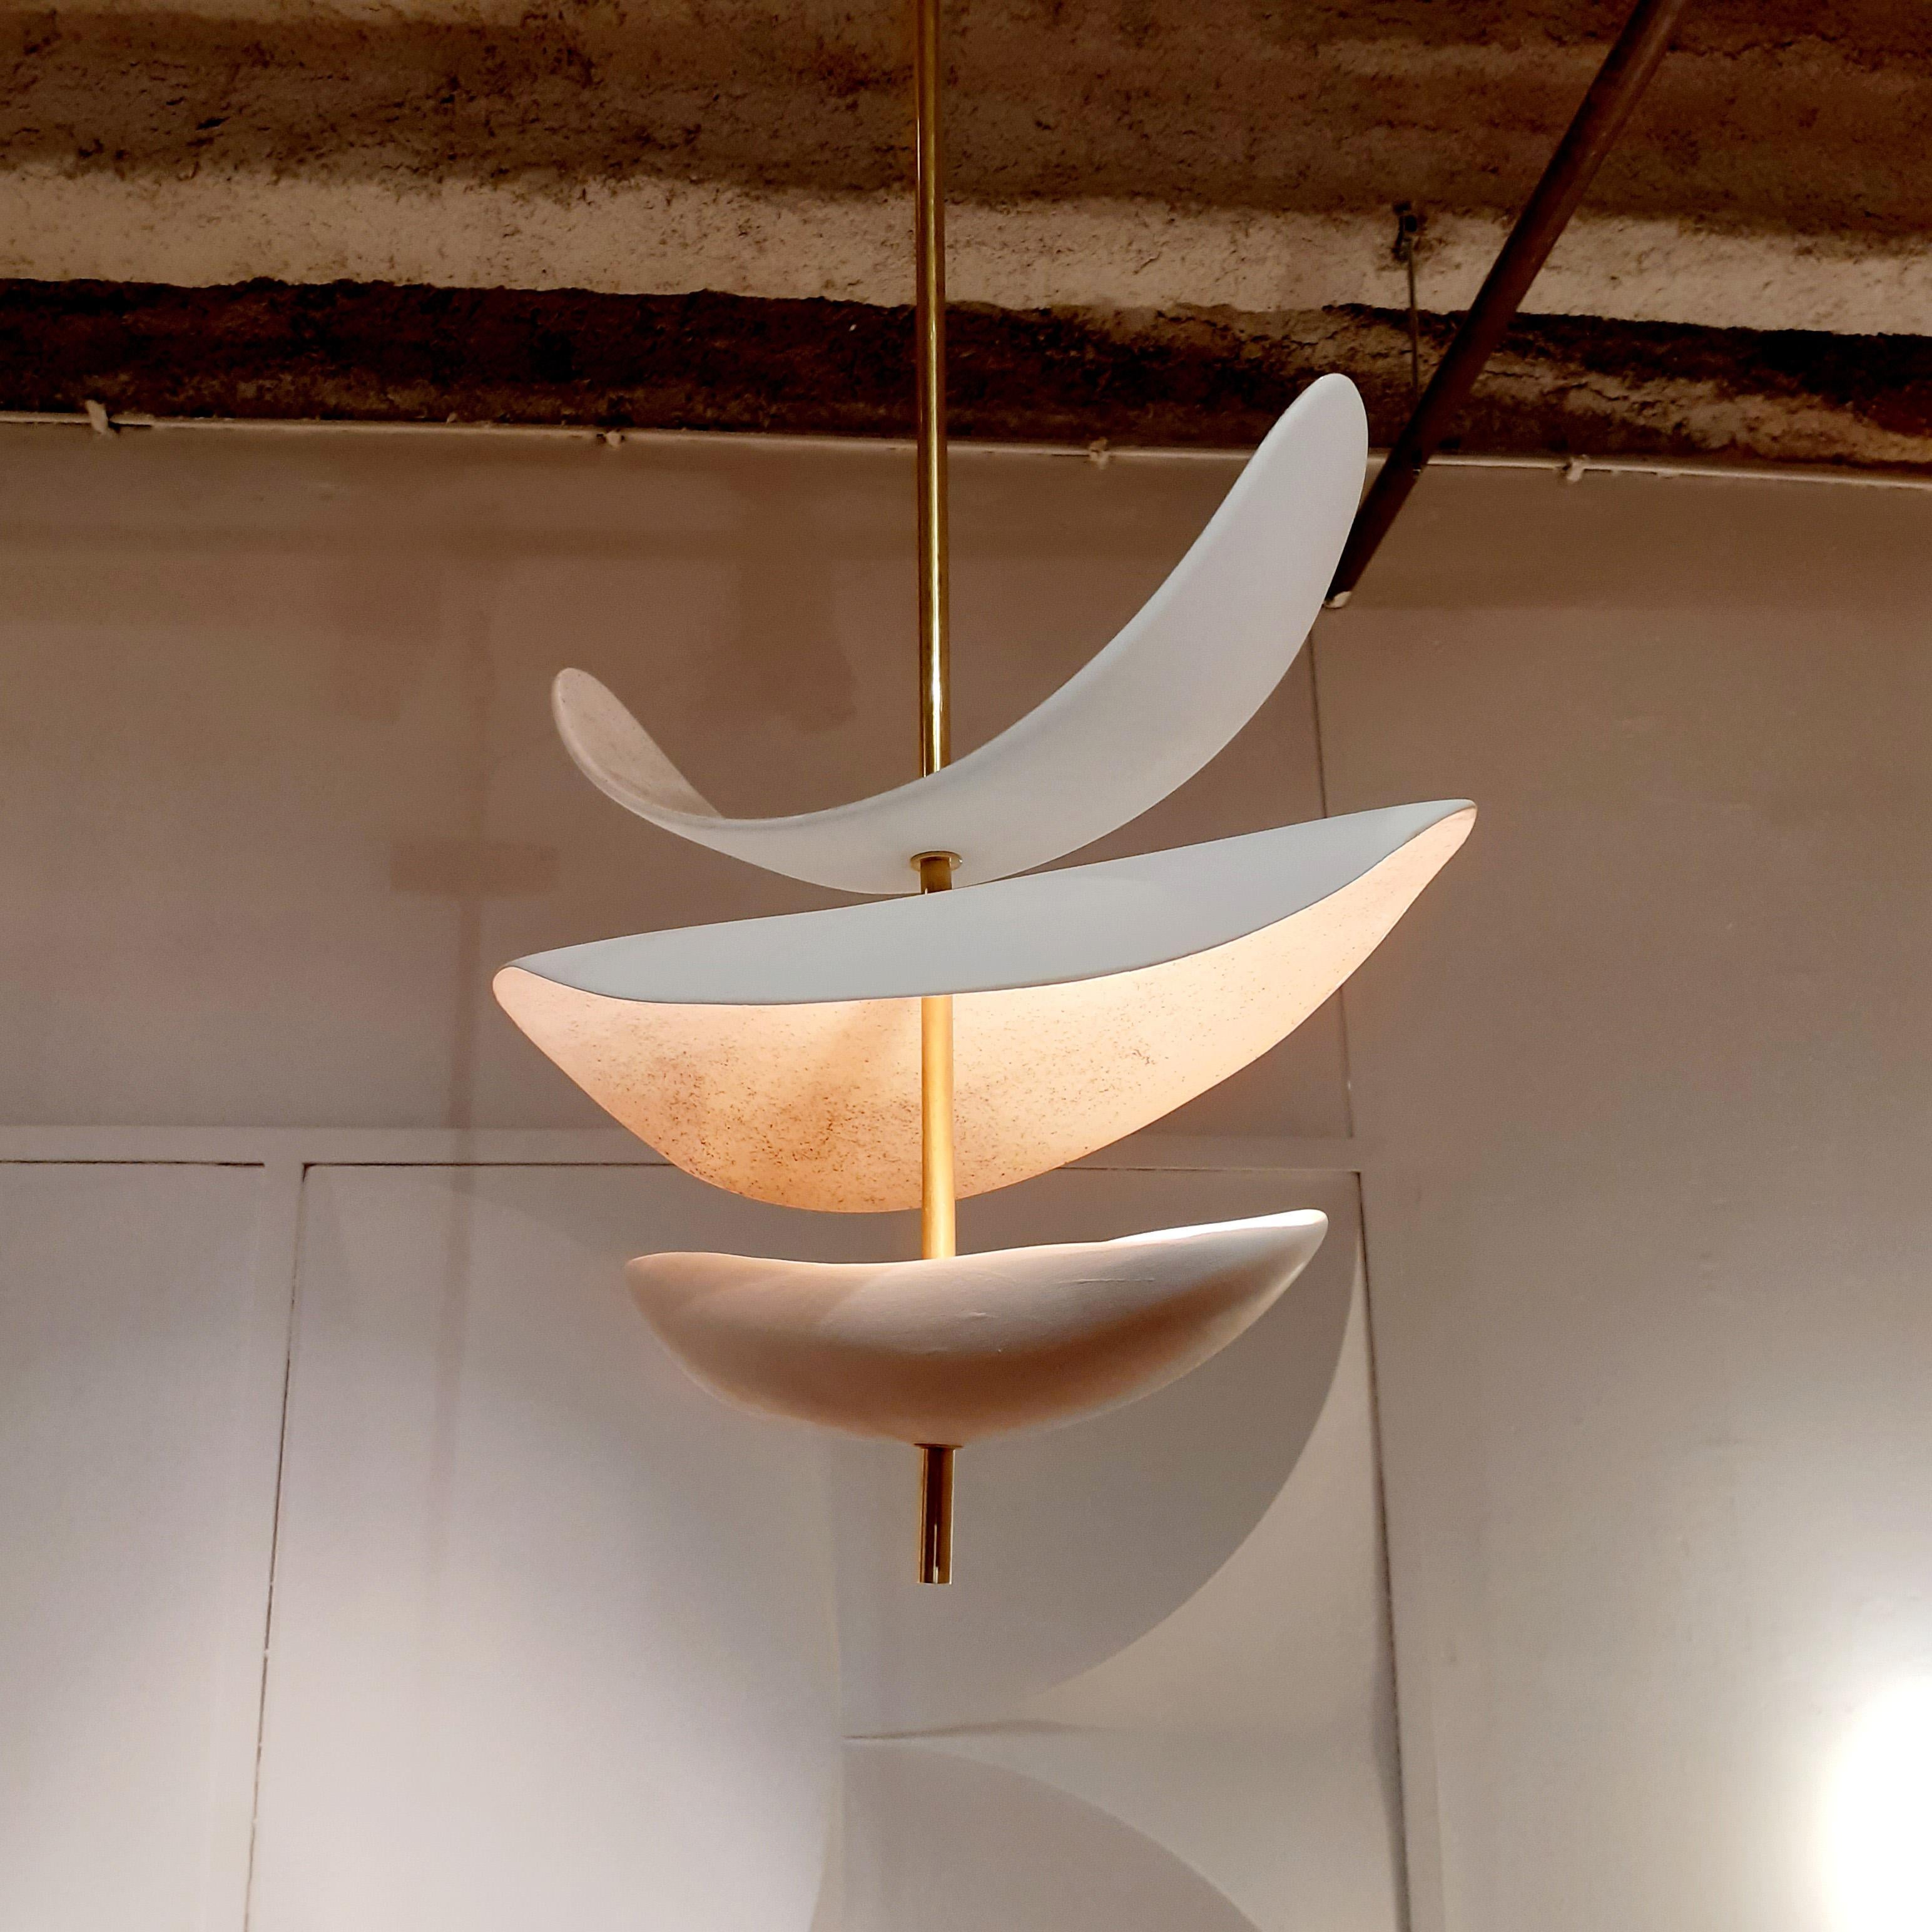 Enameled French Handmade Ceramic Ceiling Lamp